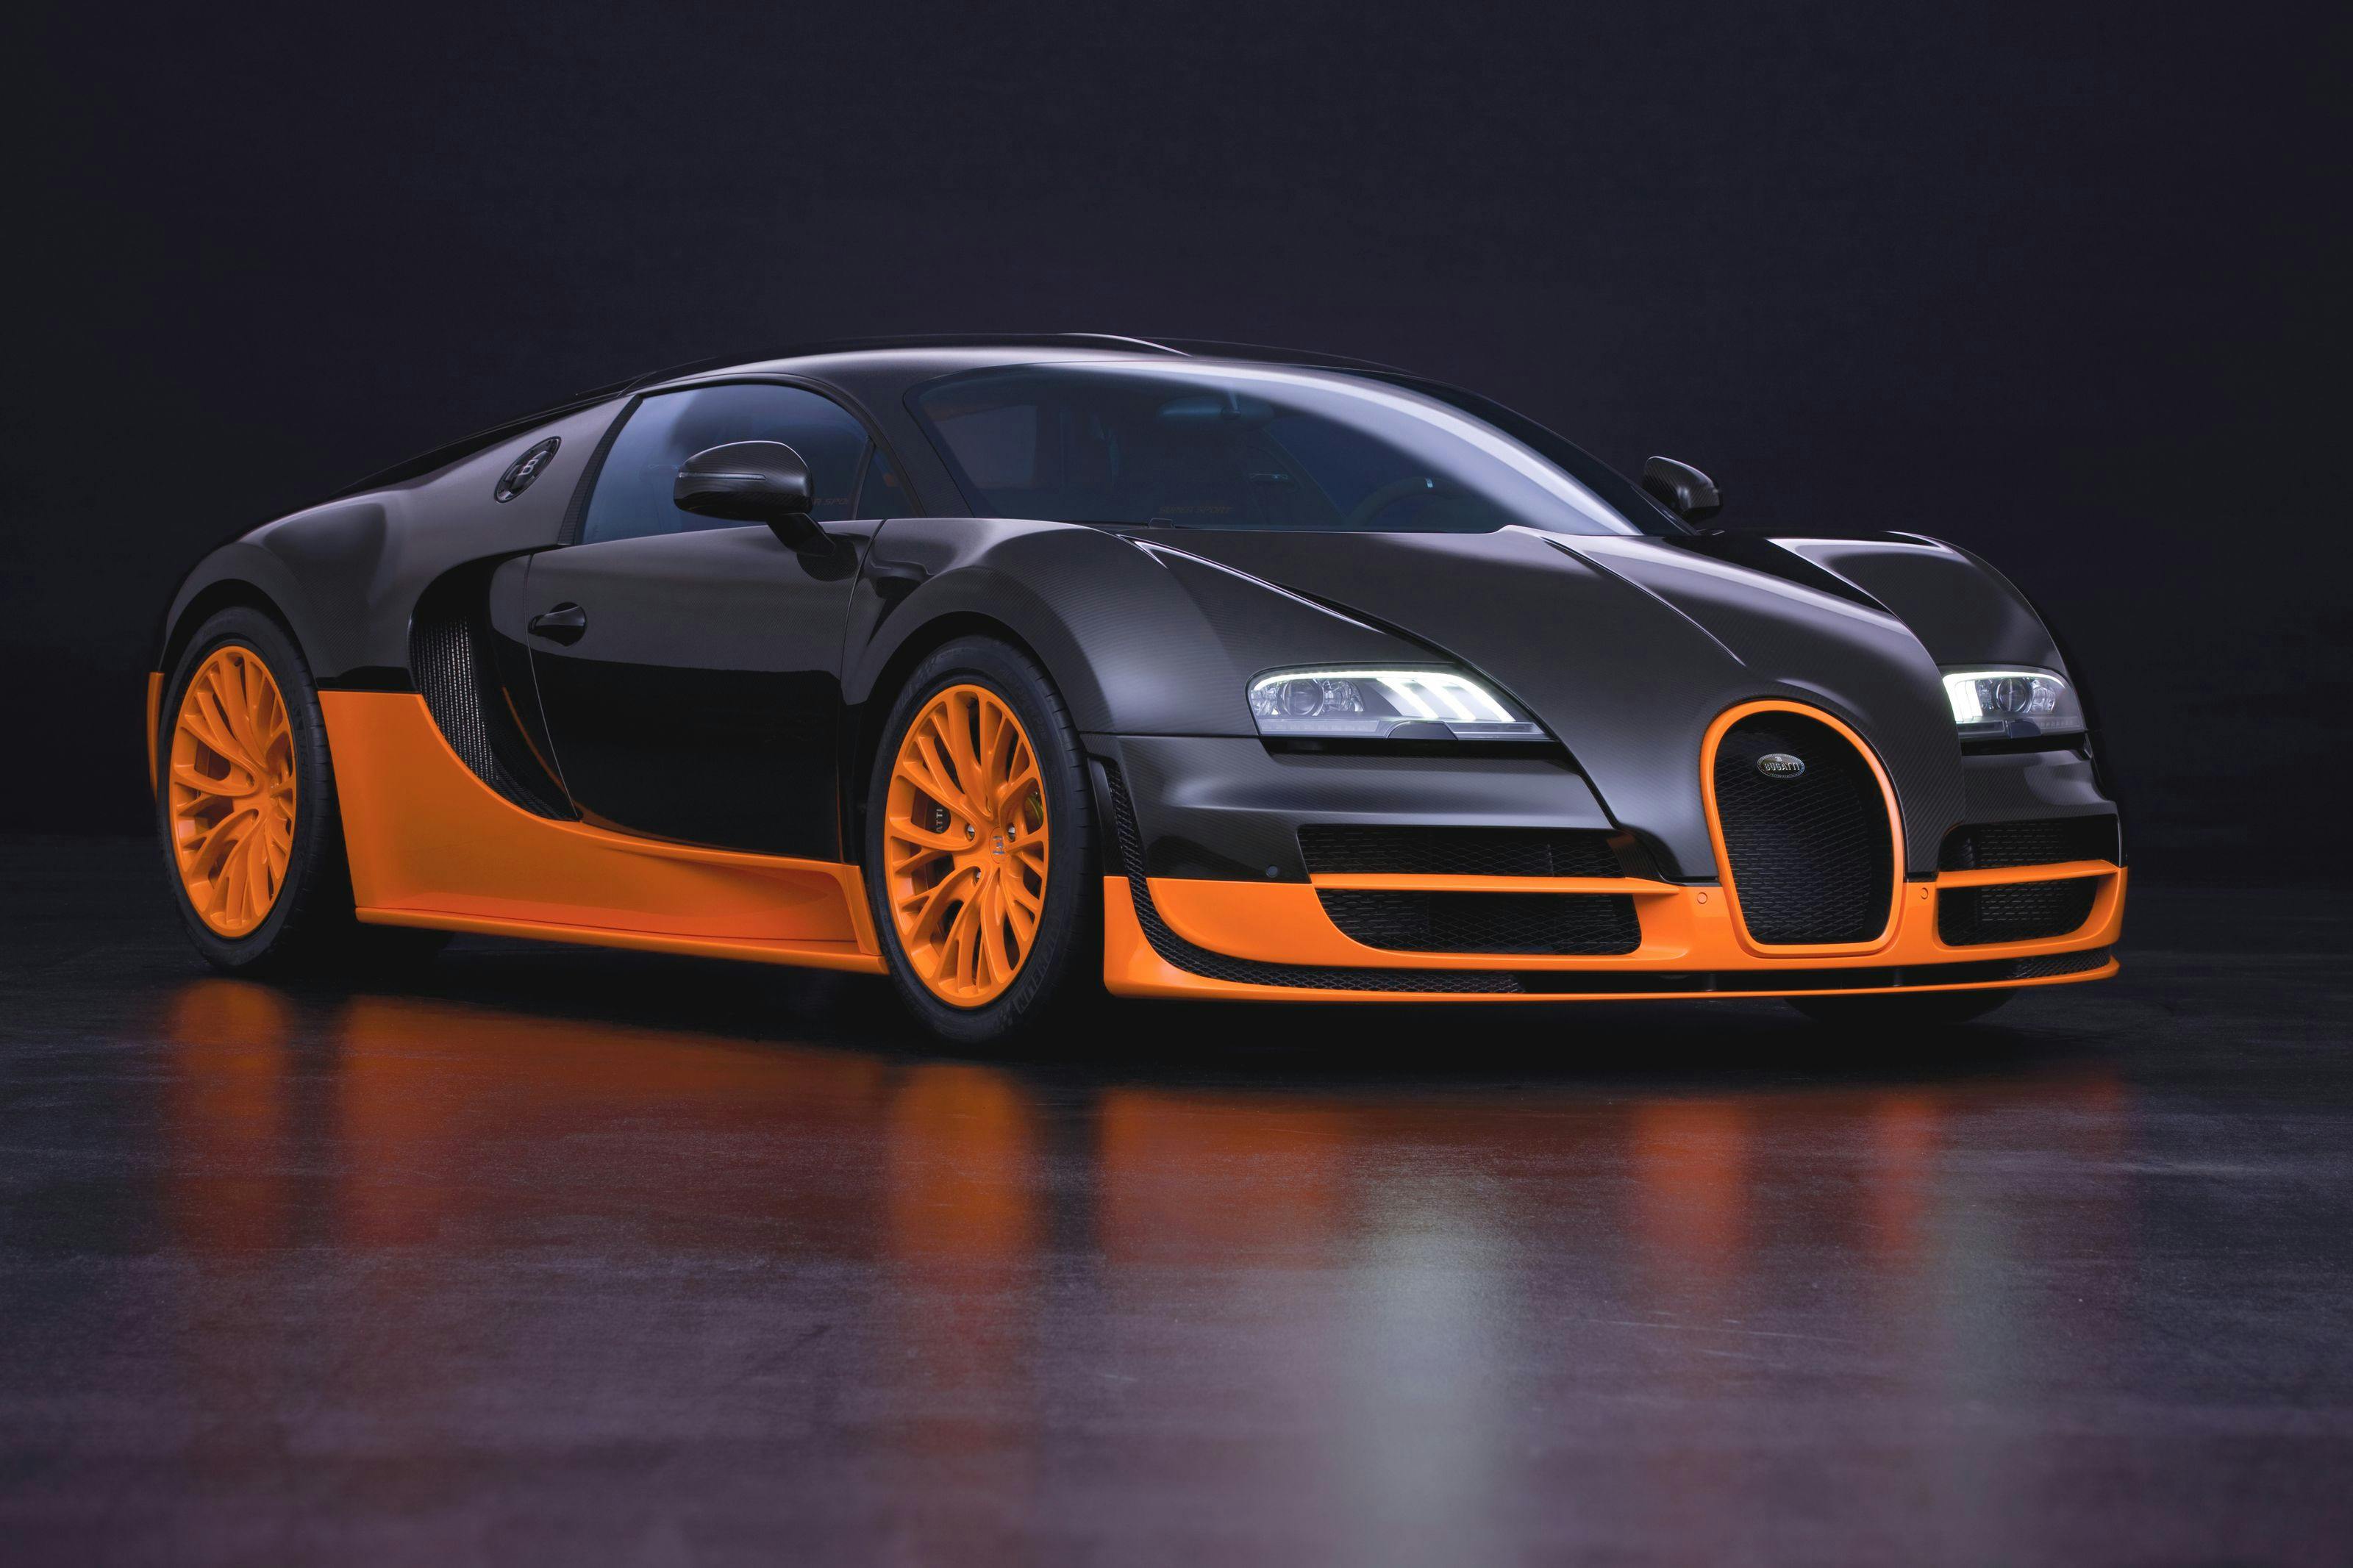 Mit 431,072 km/h nach Doha:  Bugatti zeigt das schnellste Serienfahrzeug der Welt auf der  Qatar Motor Show 2015